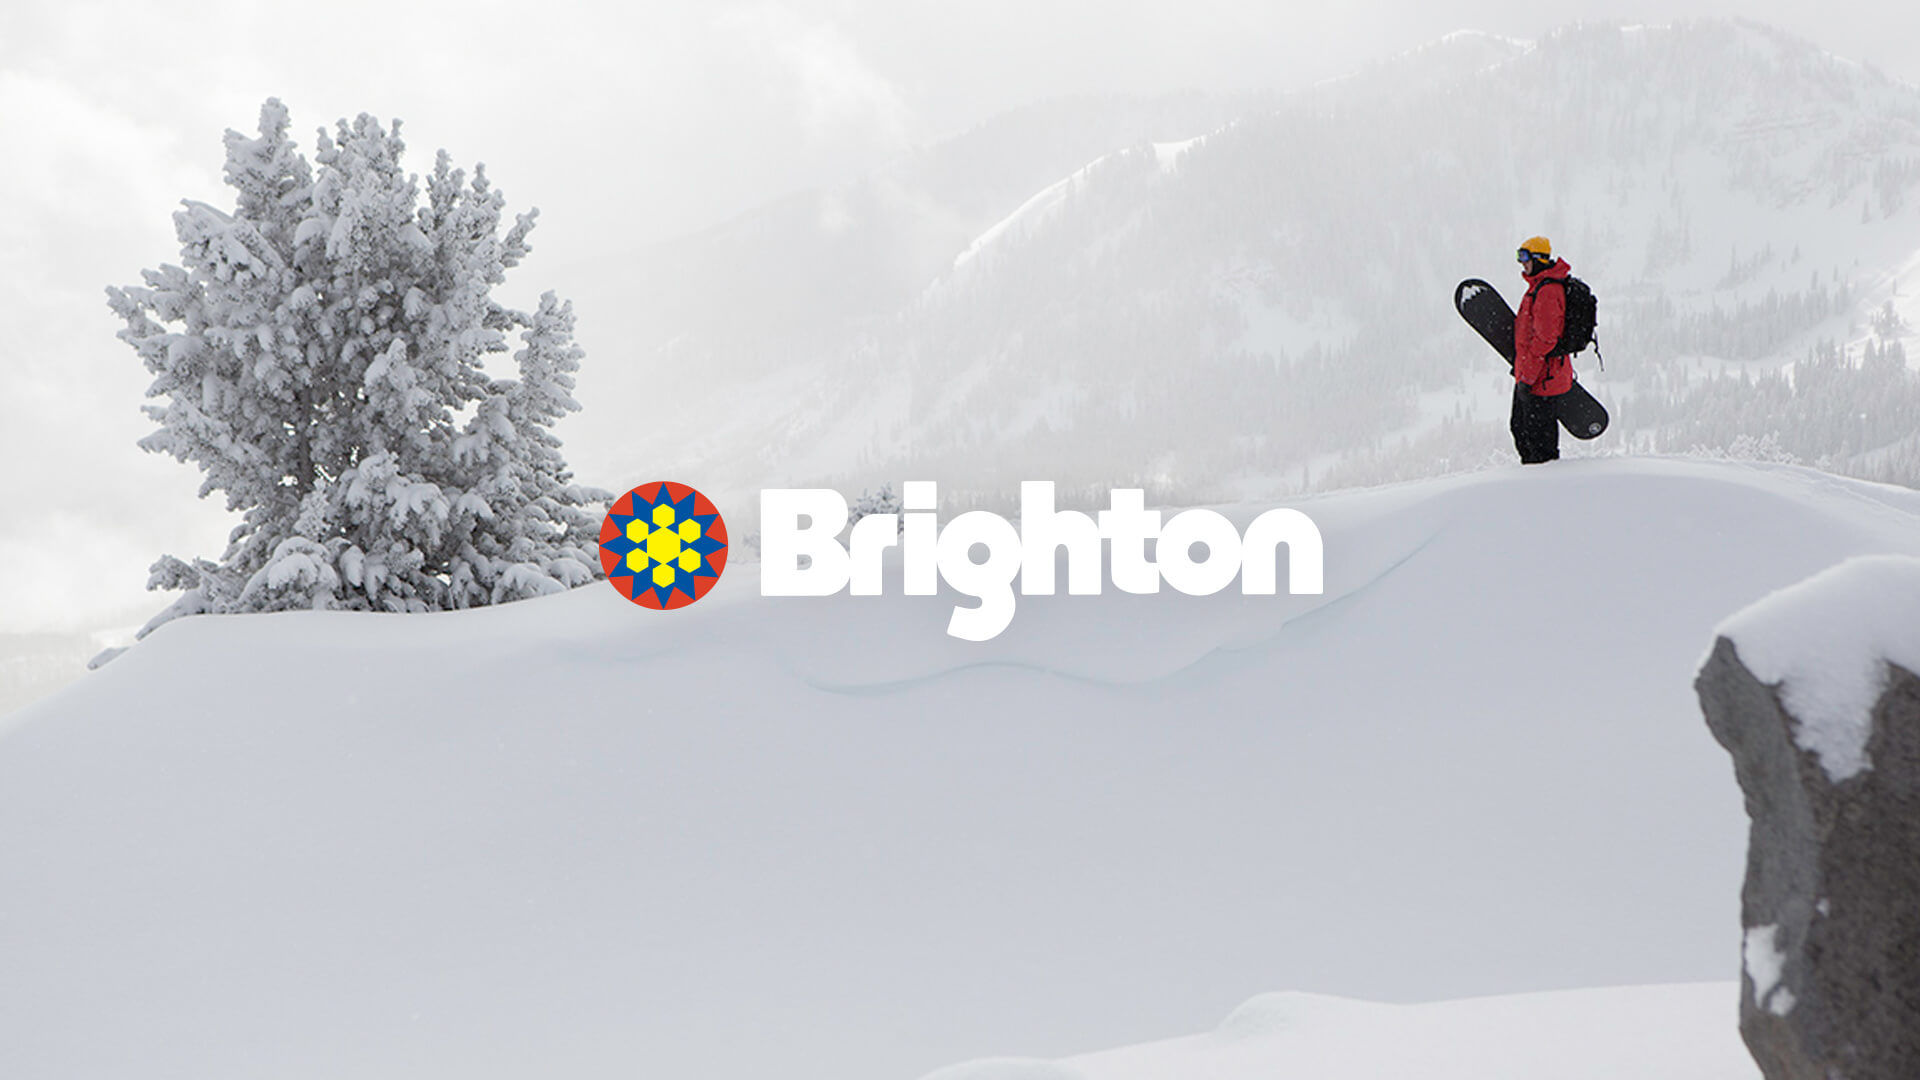 Brighton Ski Resort